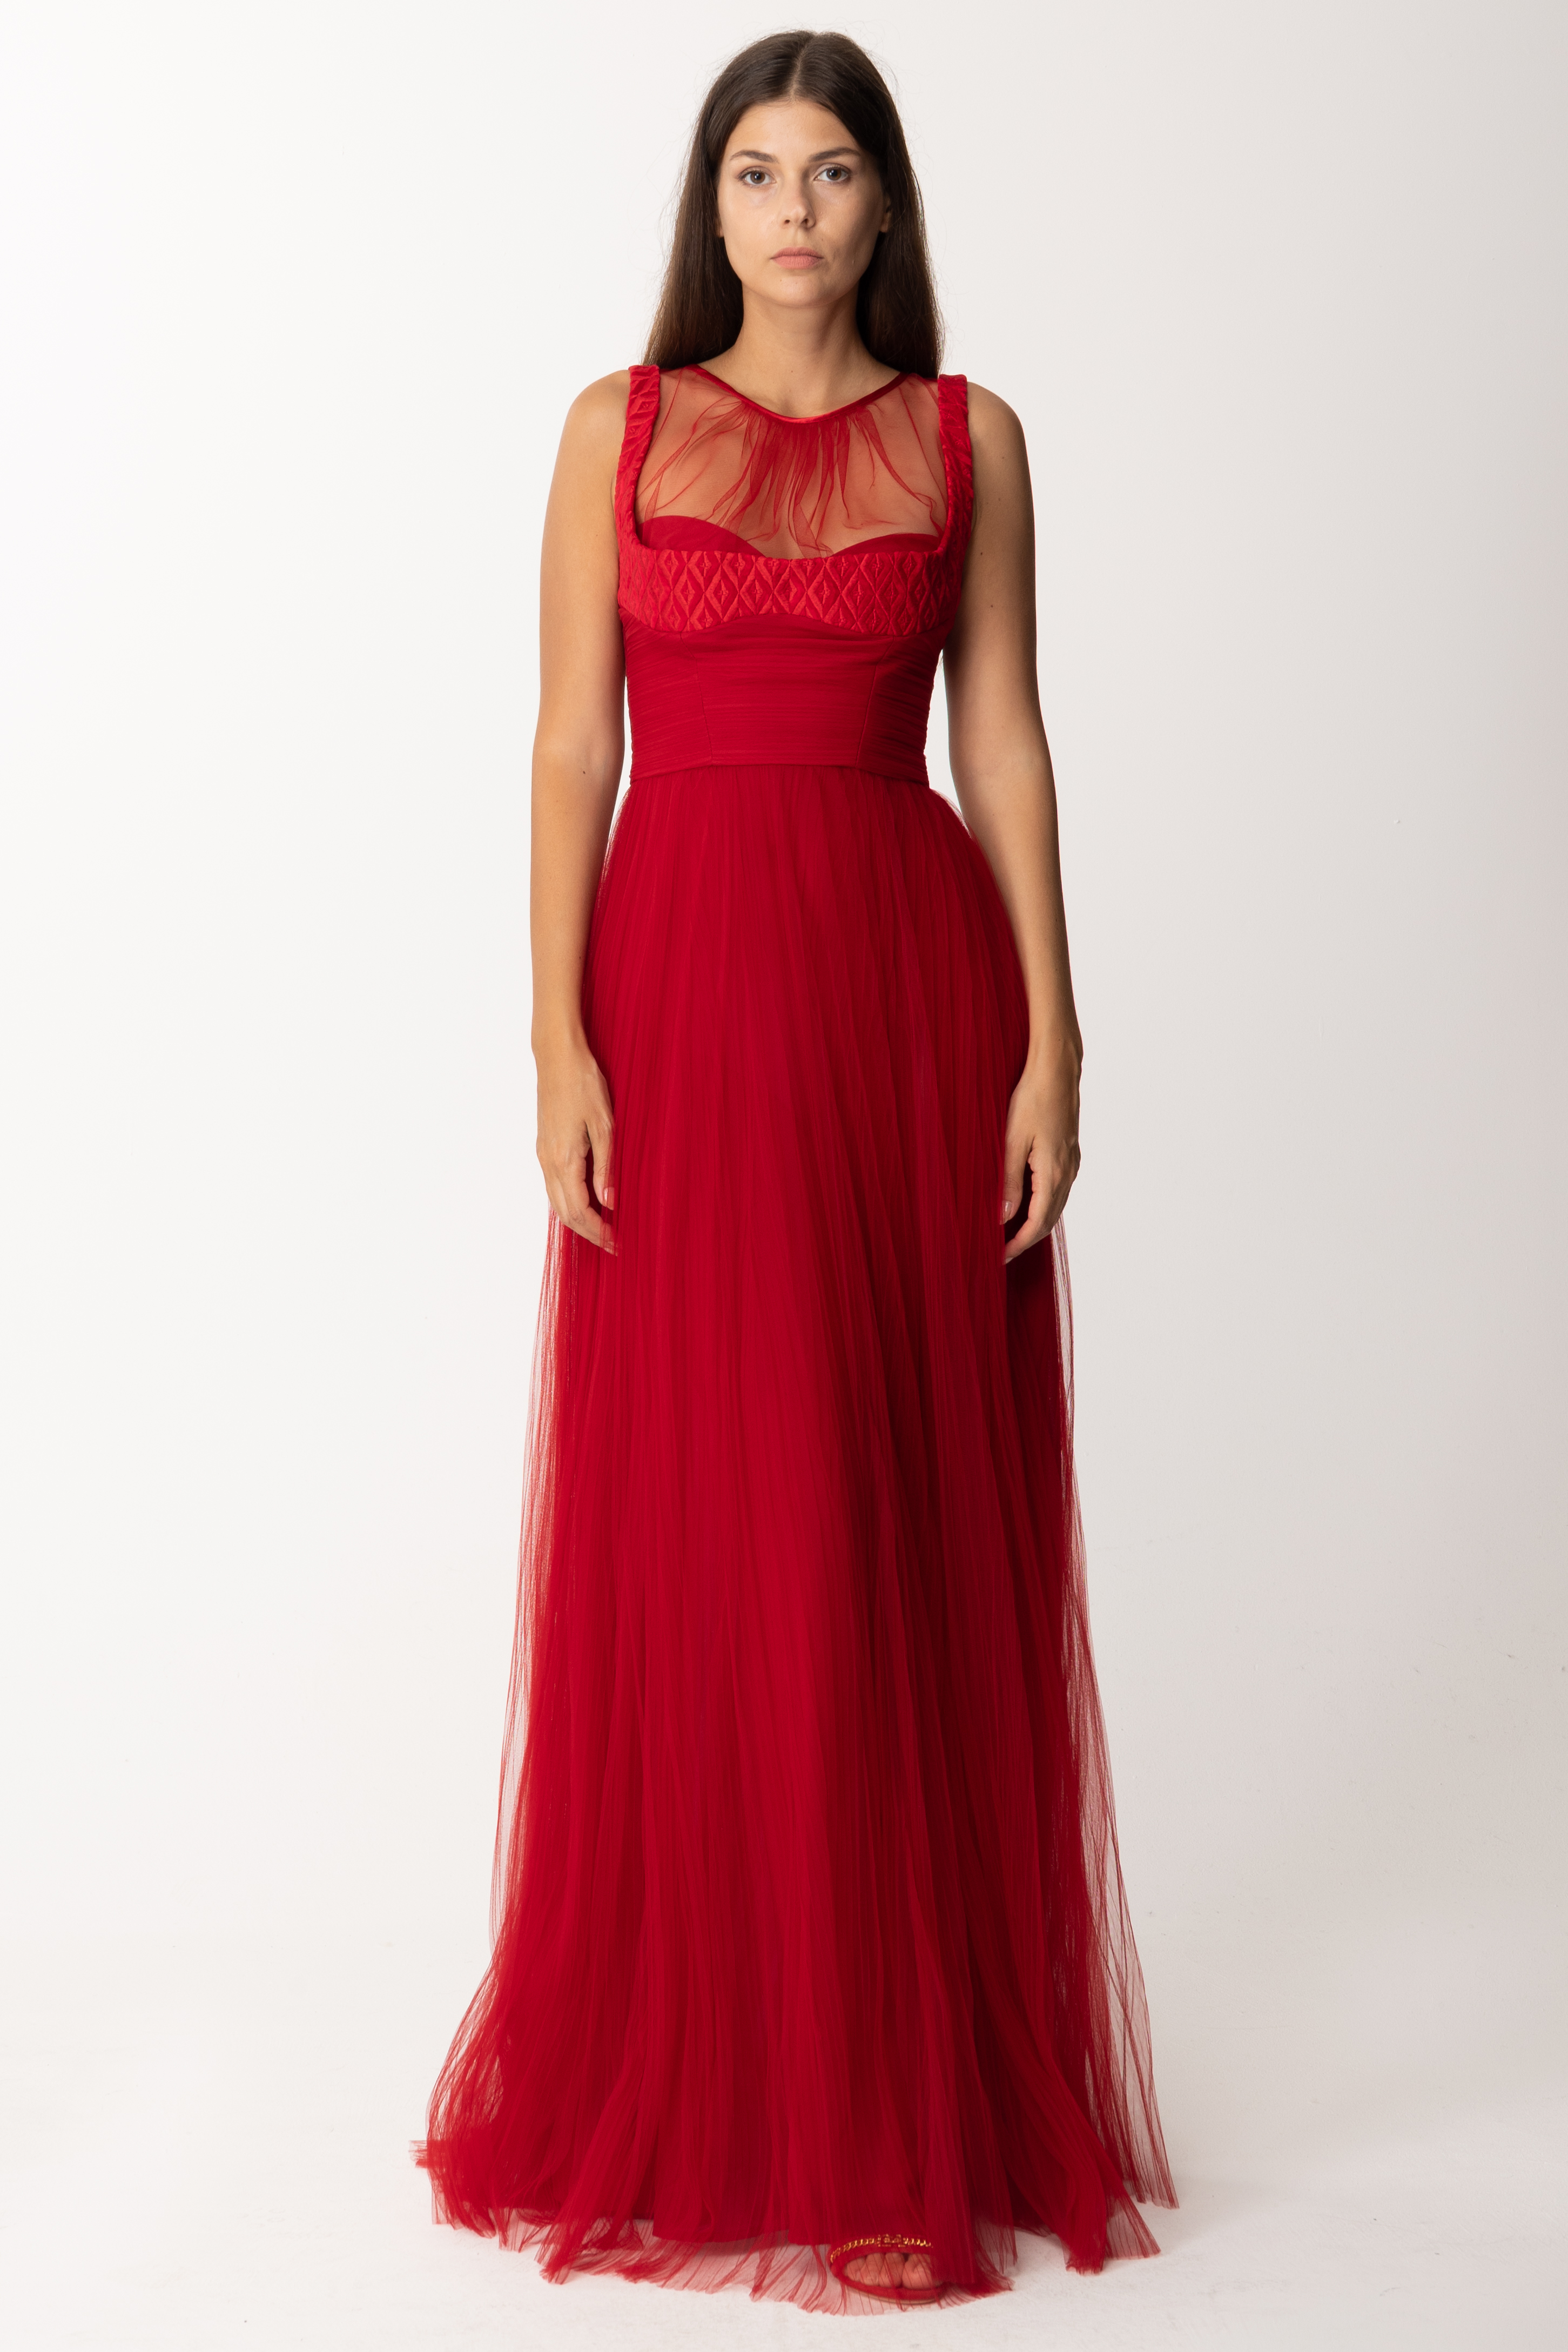 Vorschau: Elisabetta Franchi Kleid für den roten Teppich aus Tüll RED VELVET